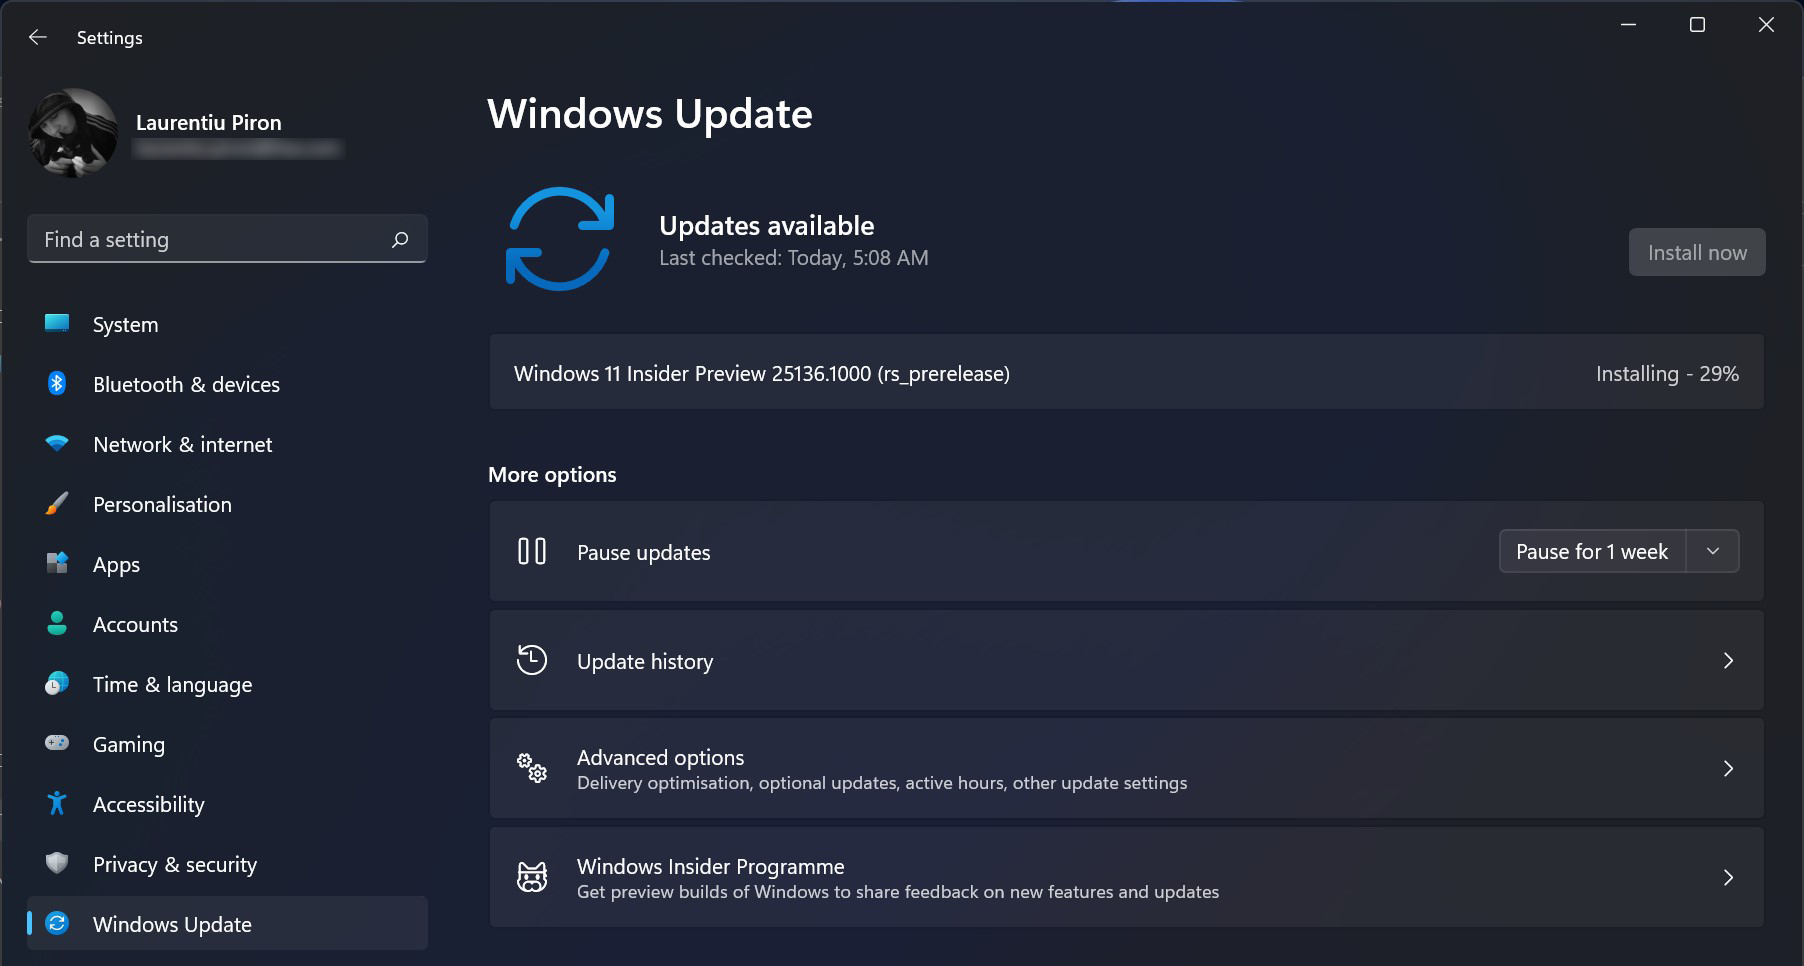 Install Windows 11 內幕預覽